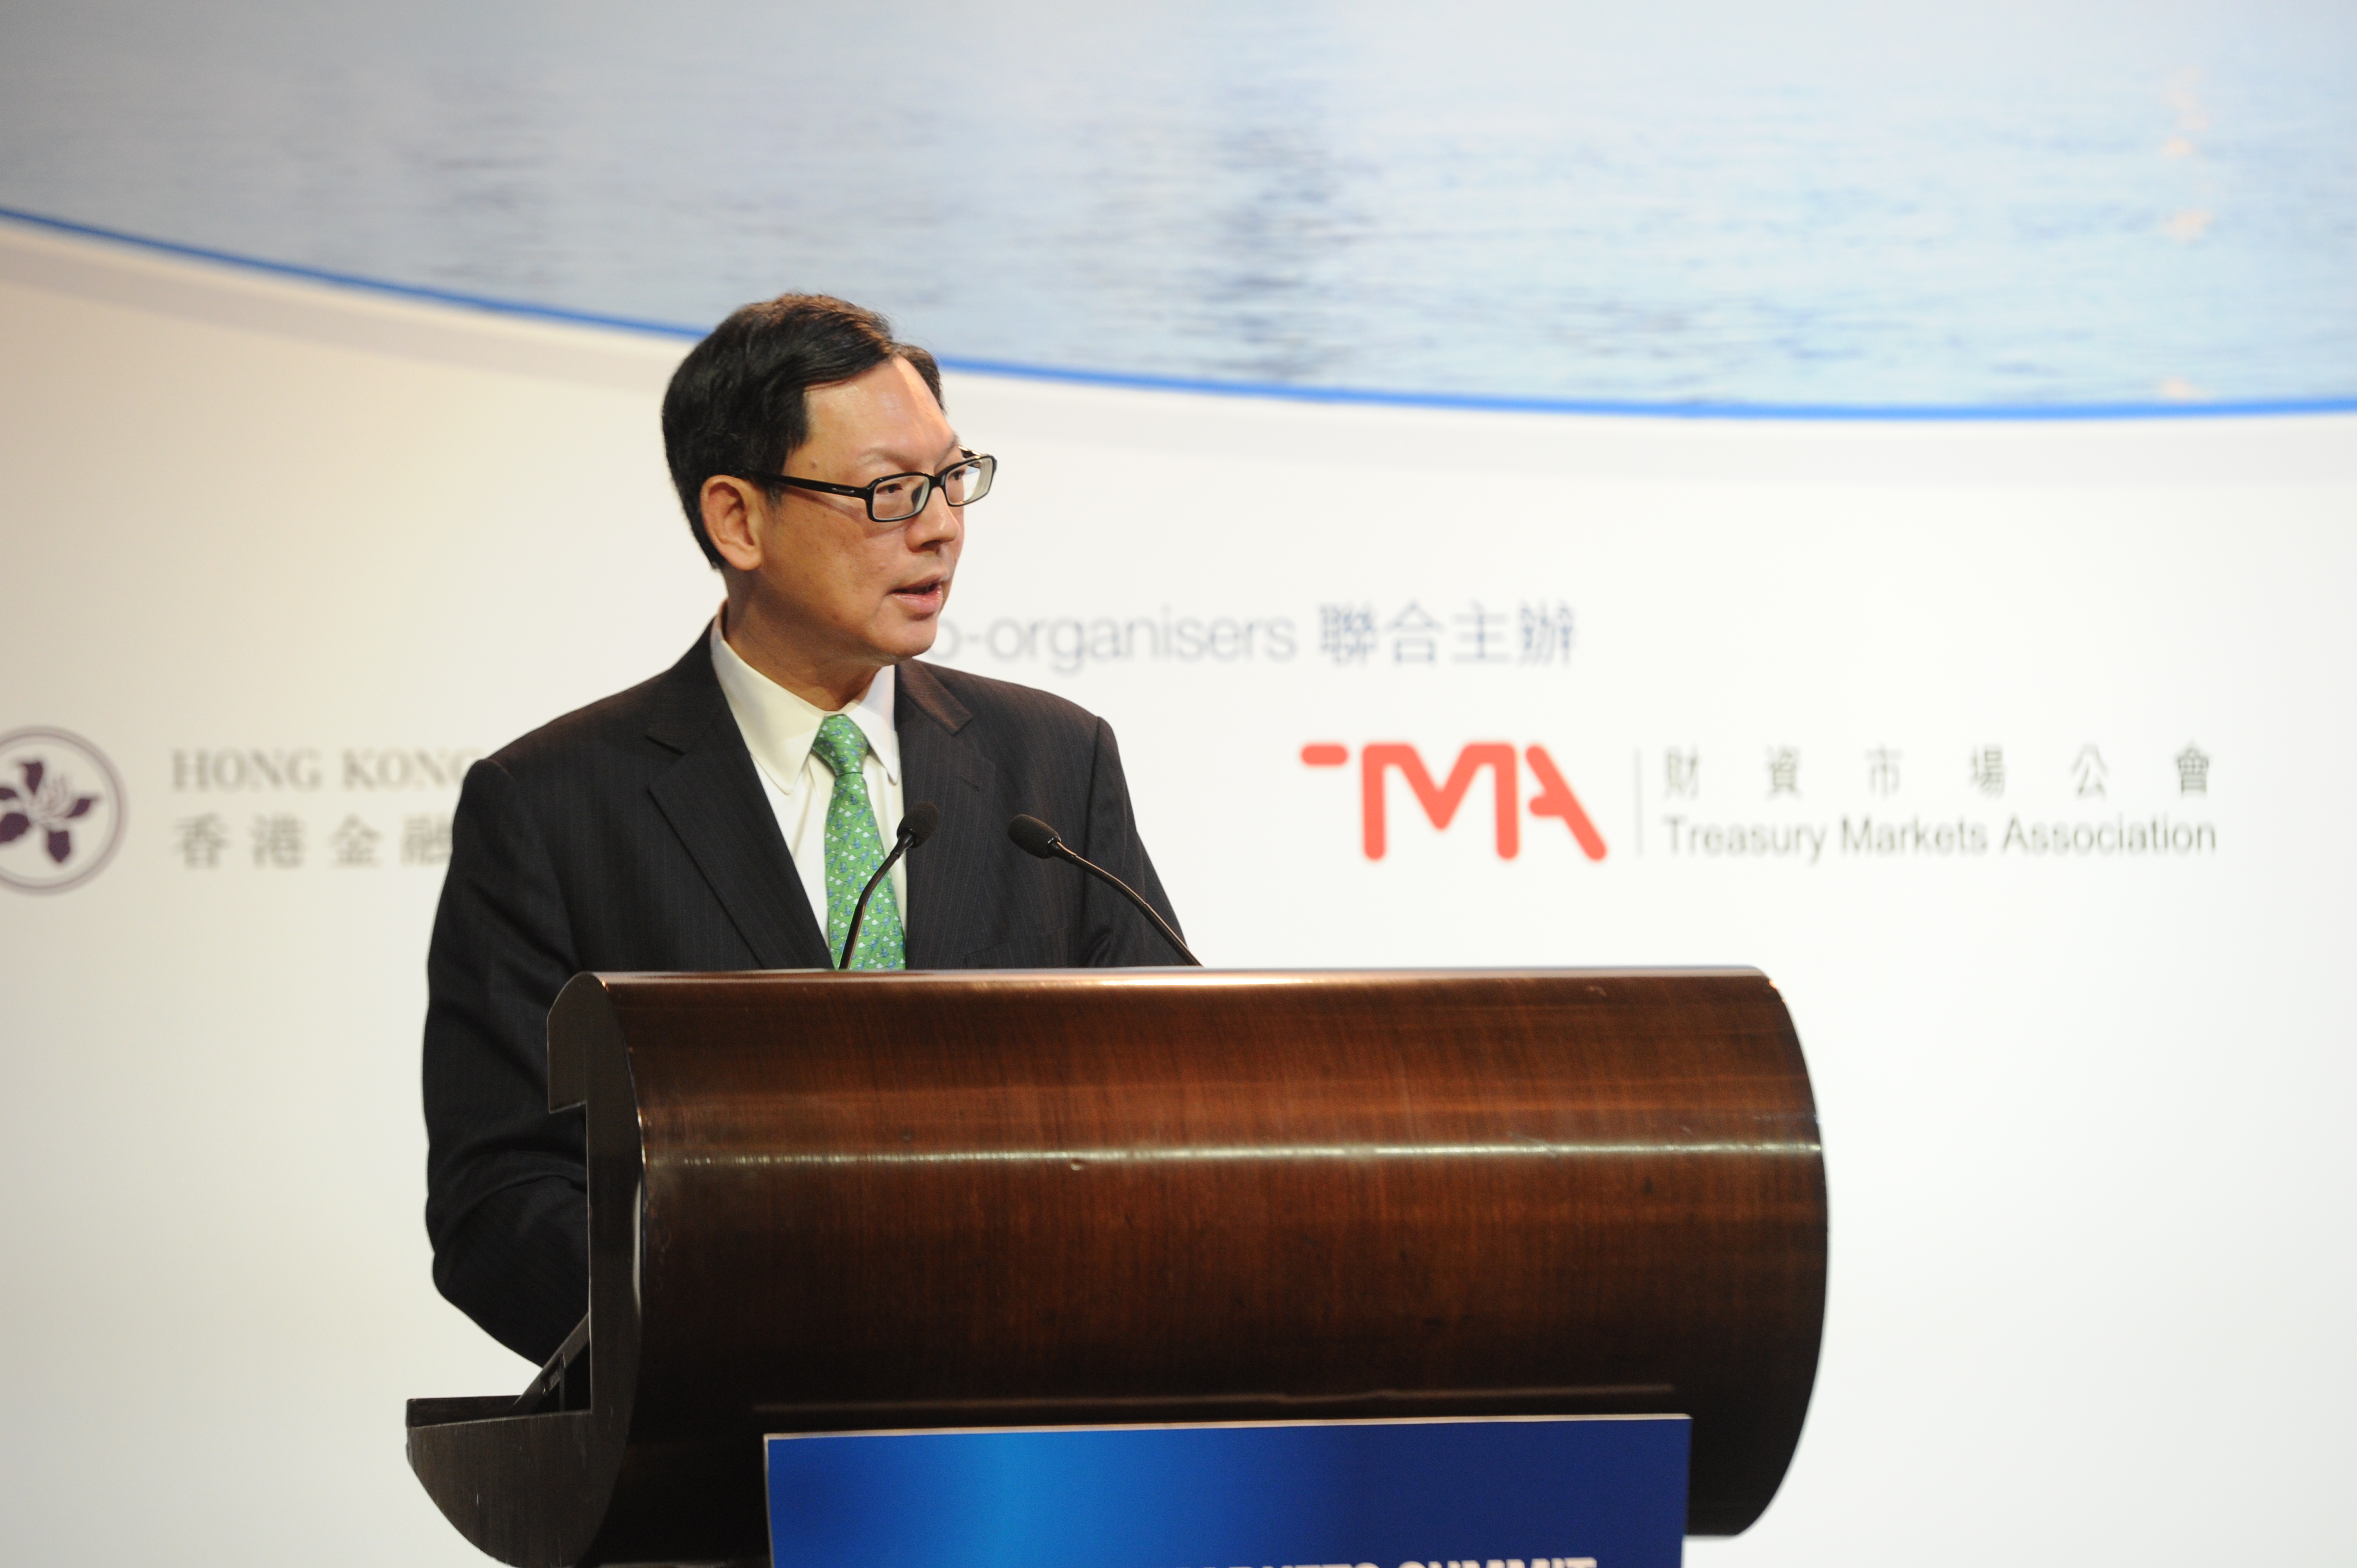 香港金融管理局总裁陈德霖先生在香港举行的2013年财资市场高峰会上发表主题演讲。